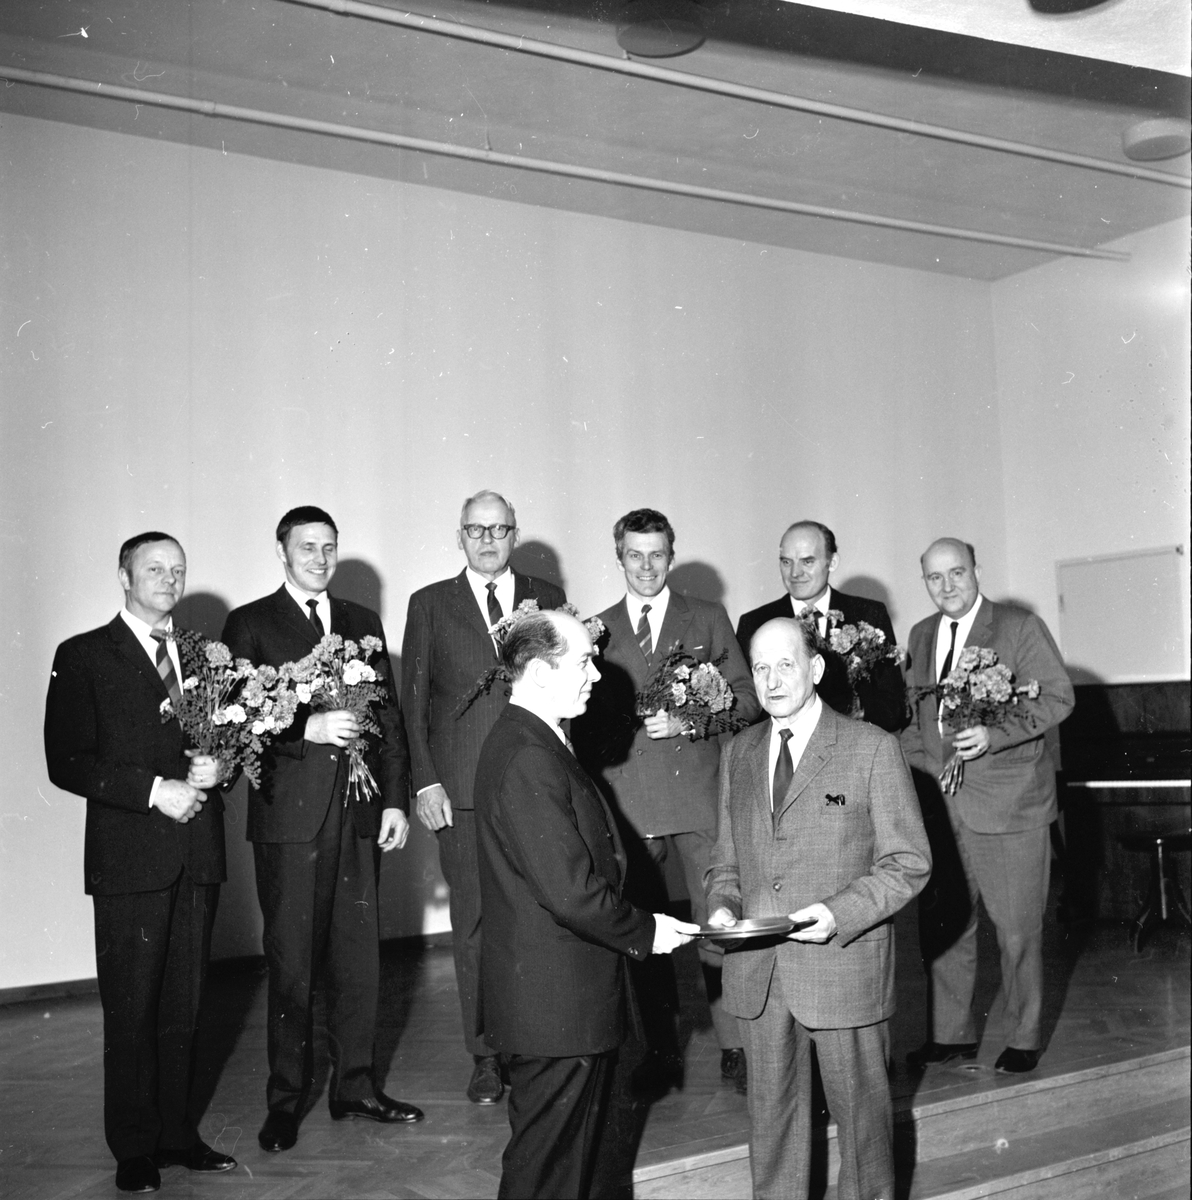 Arbrå. Sista fullmäktige sammanträdet.
December 1970